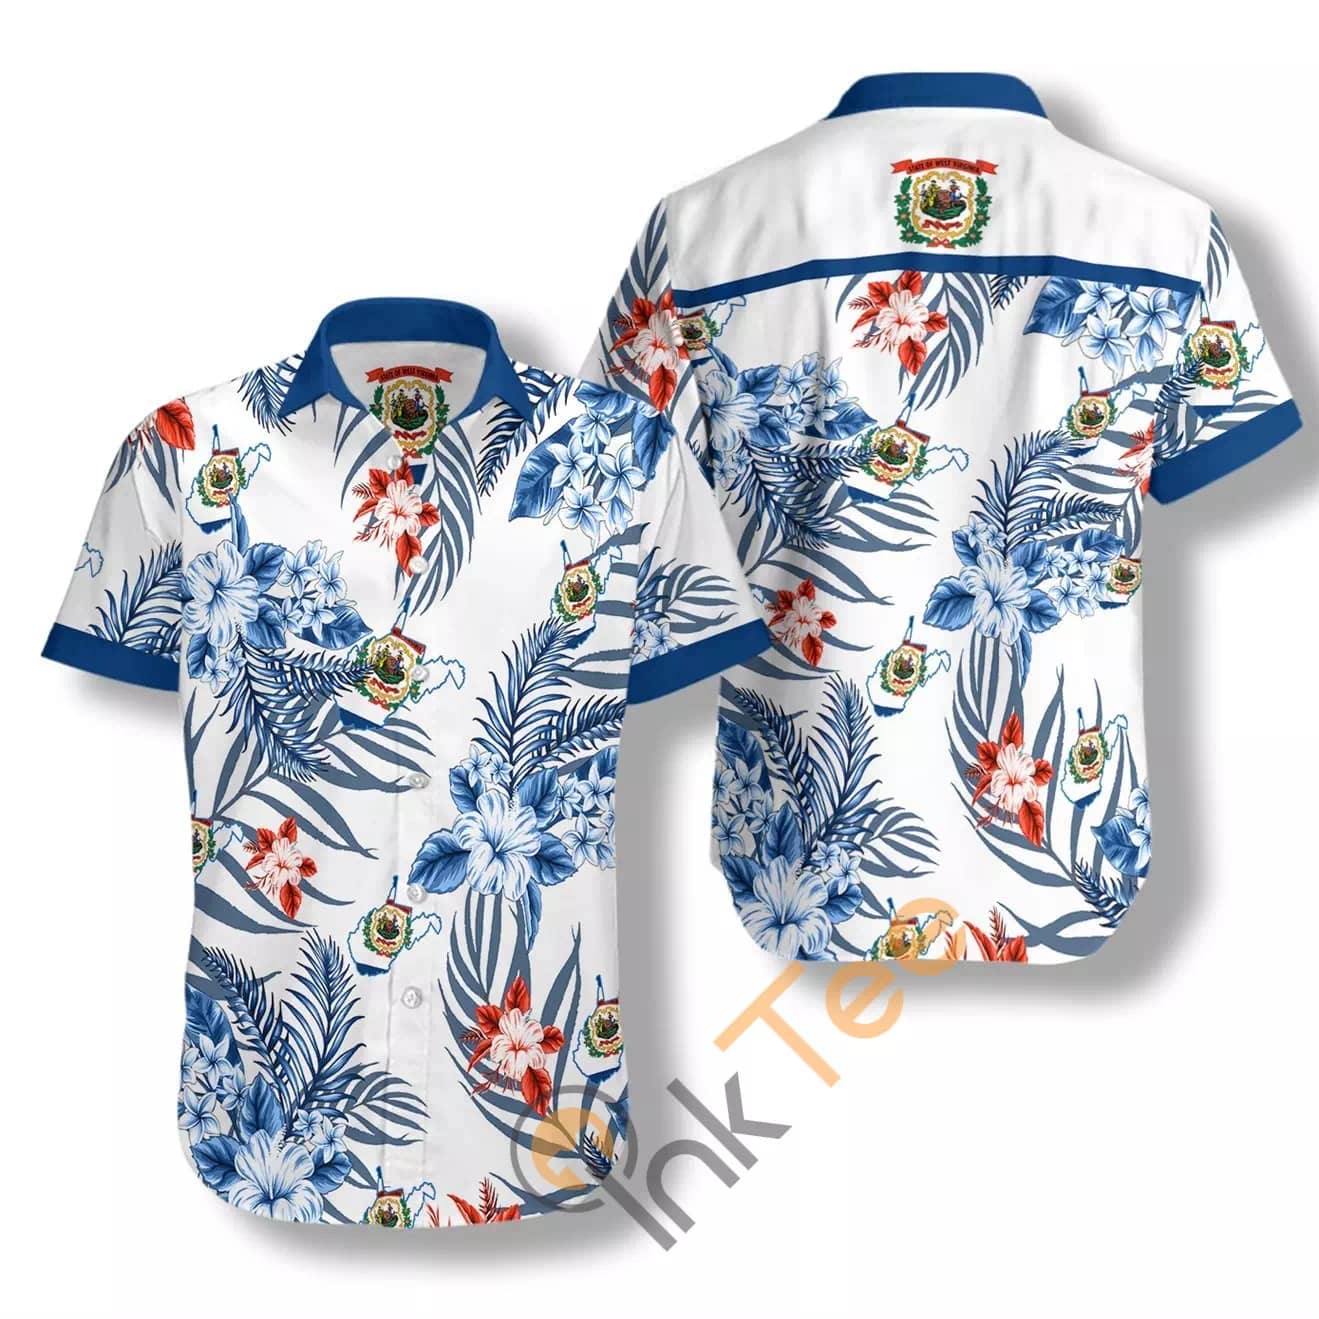 West Virginia Proud N504 Hawaiian shirts